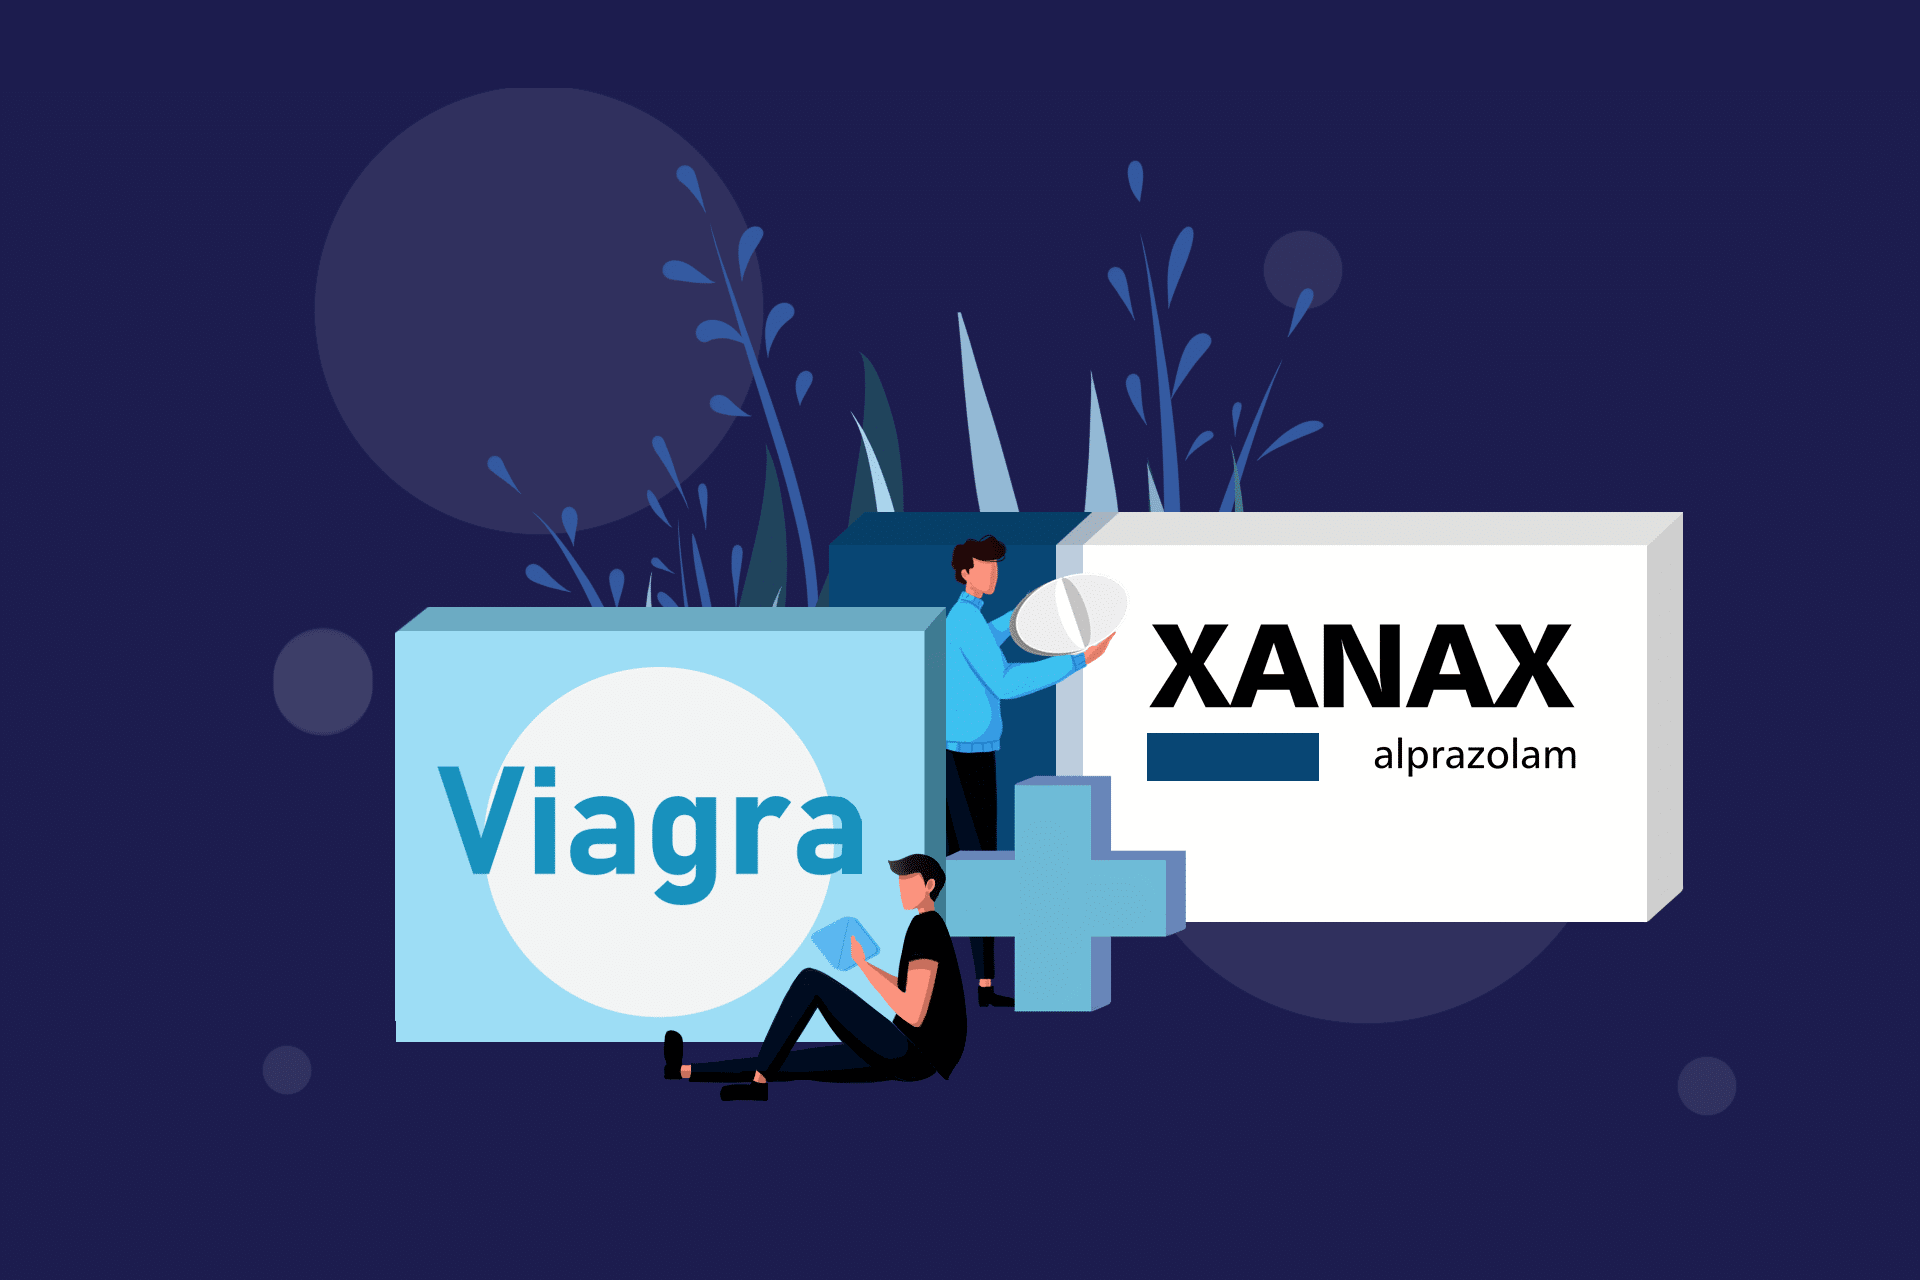 Viagra and Xanax